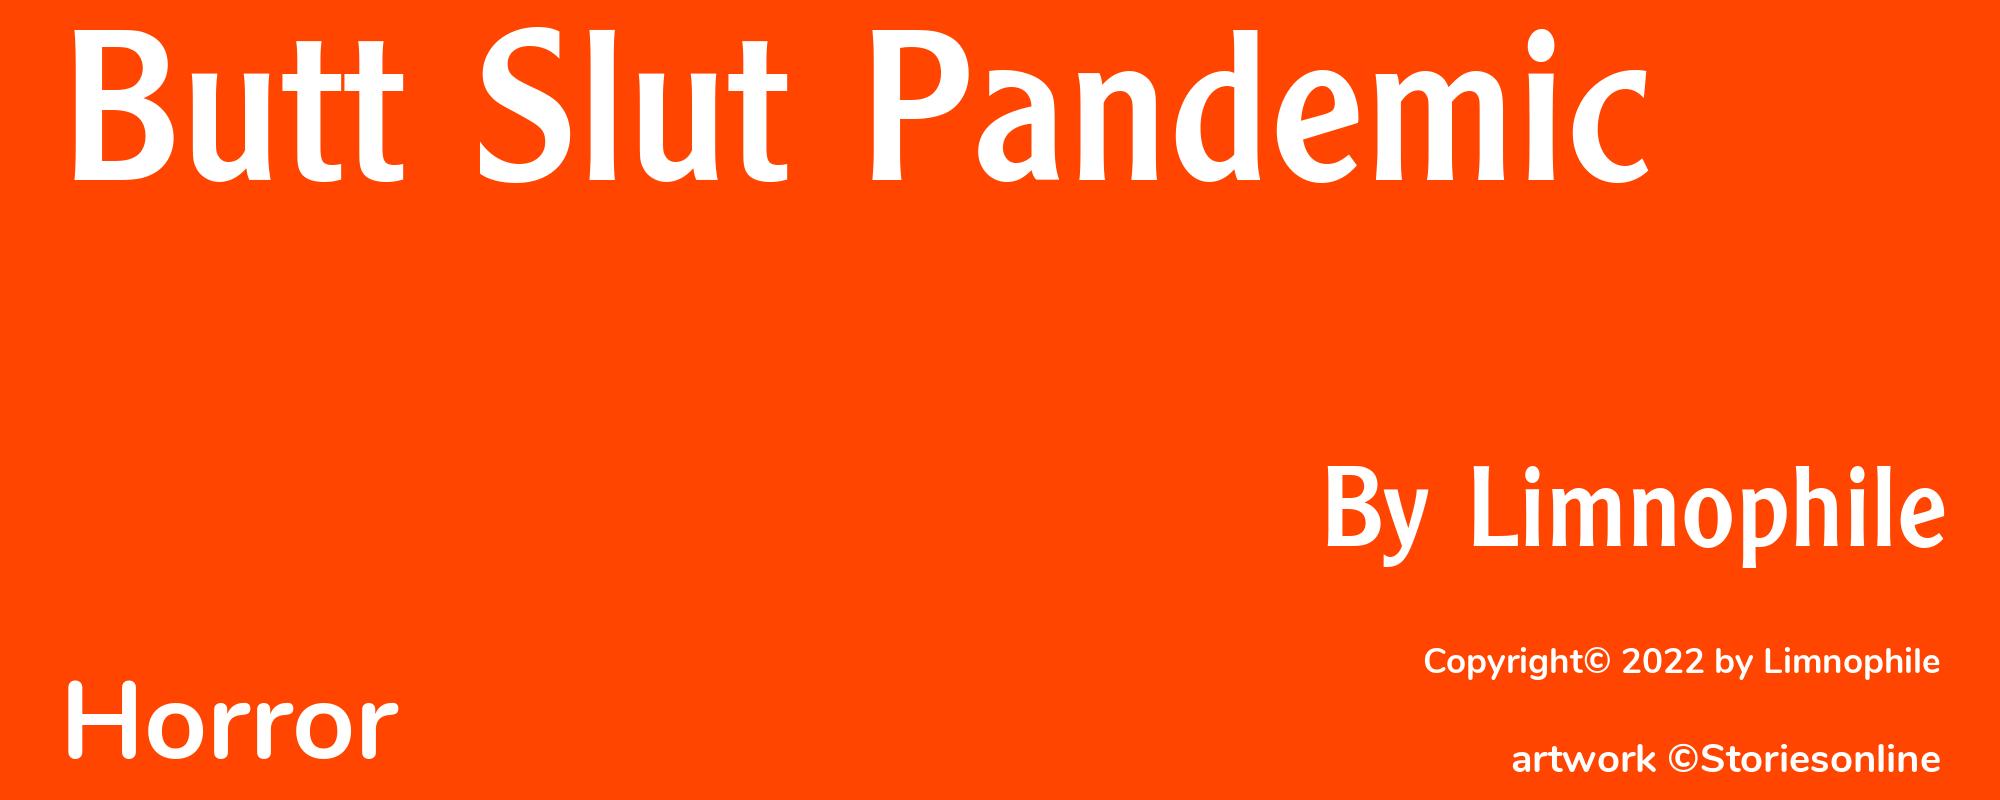 Butt Slut Pandemic - Cover